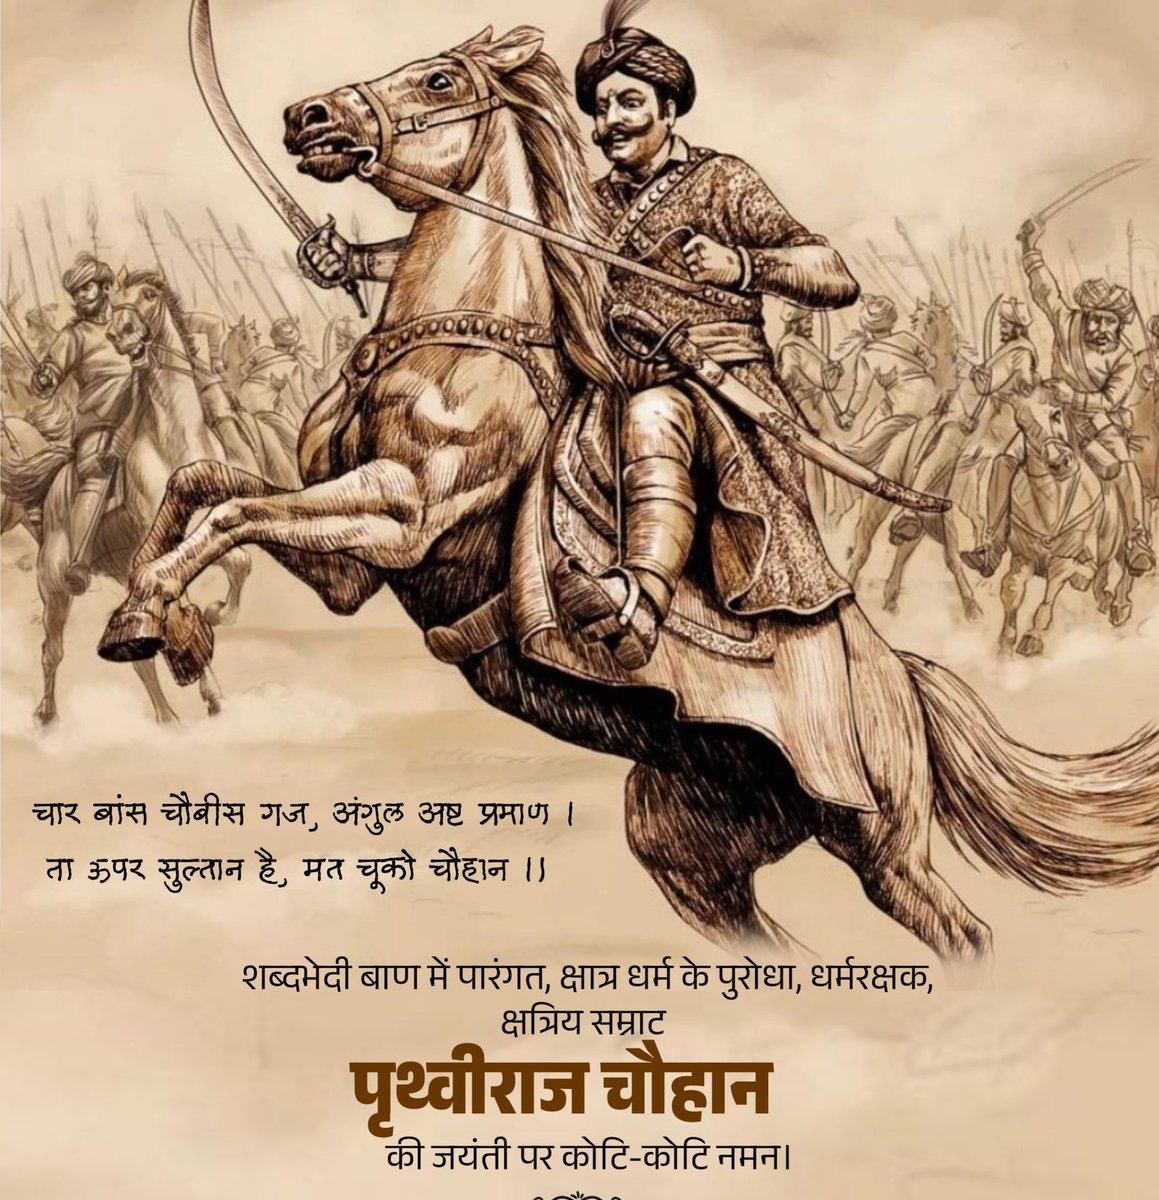 चौदह वर्ष की उम्र जिसने शेर का जबड़ा फाड़ दिया। बाल्यवस्था में शत्रुओं की छाती पर केसरिया गाड़ दिया।।
अब आप लोग ही डिसाइड कर लो
बाकी हमारे लिए भारत का महान योद्धा थे
राजपूत हो या गुर्जर क्या फर्क पड़ता है
महान थे, है और रहेंगे 🙏

#सम्राट_पृथ्वीराज_चौहान
#PrithvirajChauhan